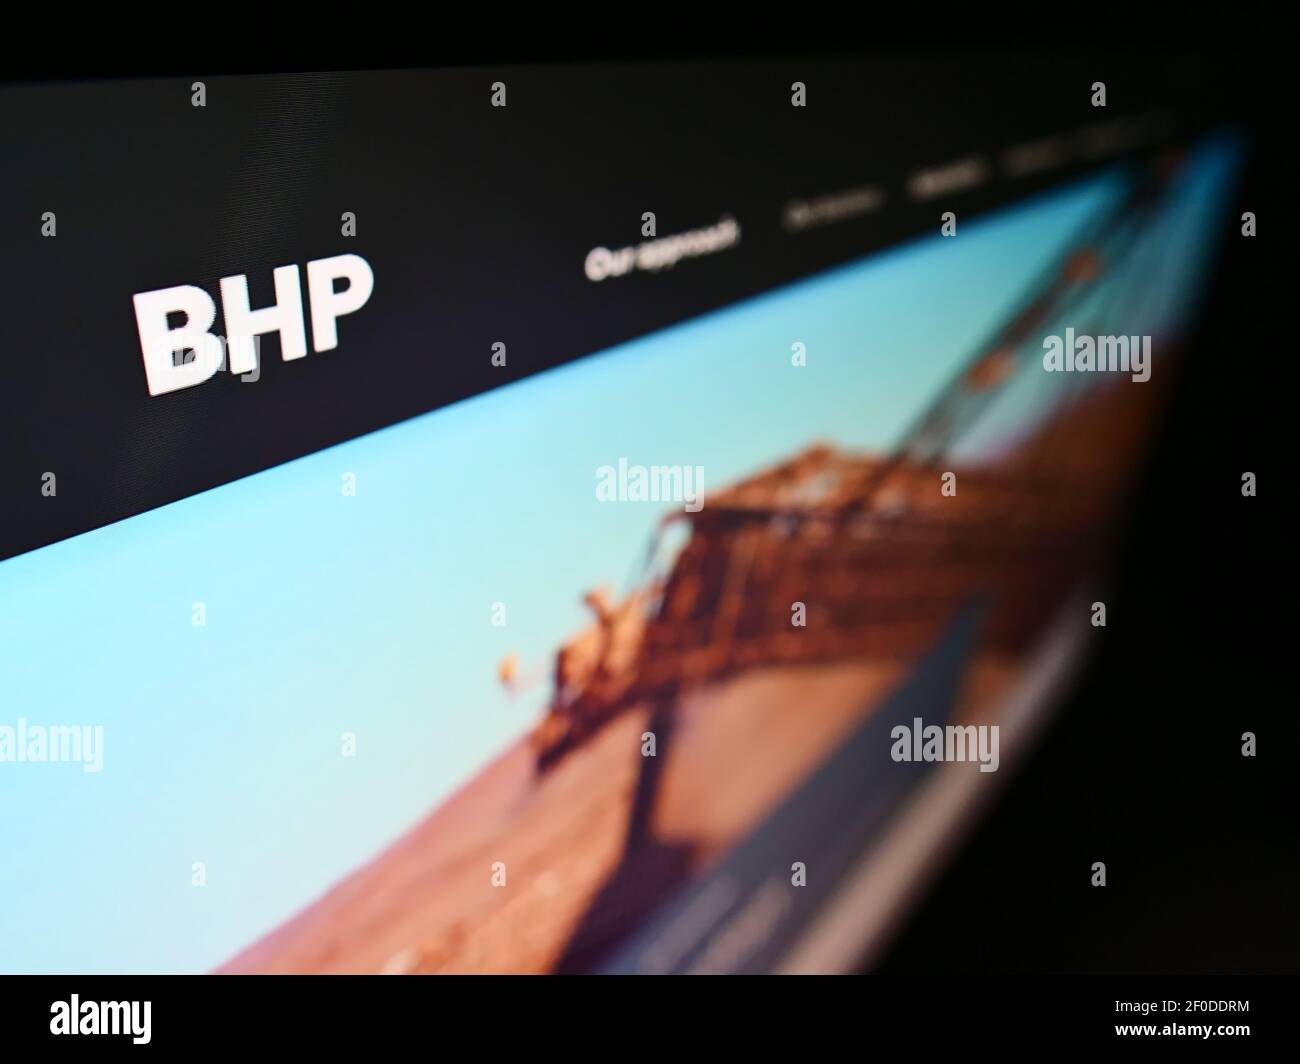 Visualizzazione ad alto angolo del sito Web aziendale con logo della società mineraria, metallurgica e petrolifera BHP Group su monitor. Mettere a fuoco in alto a sinistra dello schermo. Foto Stock